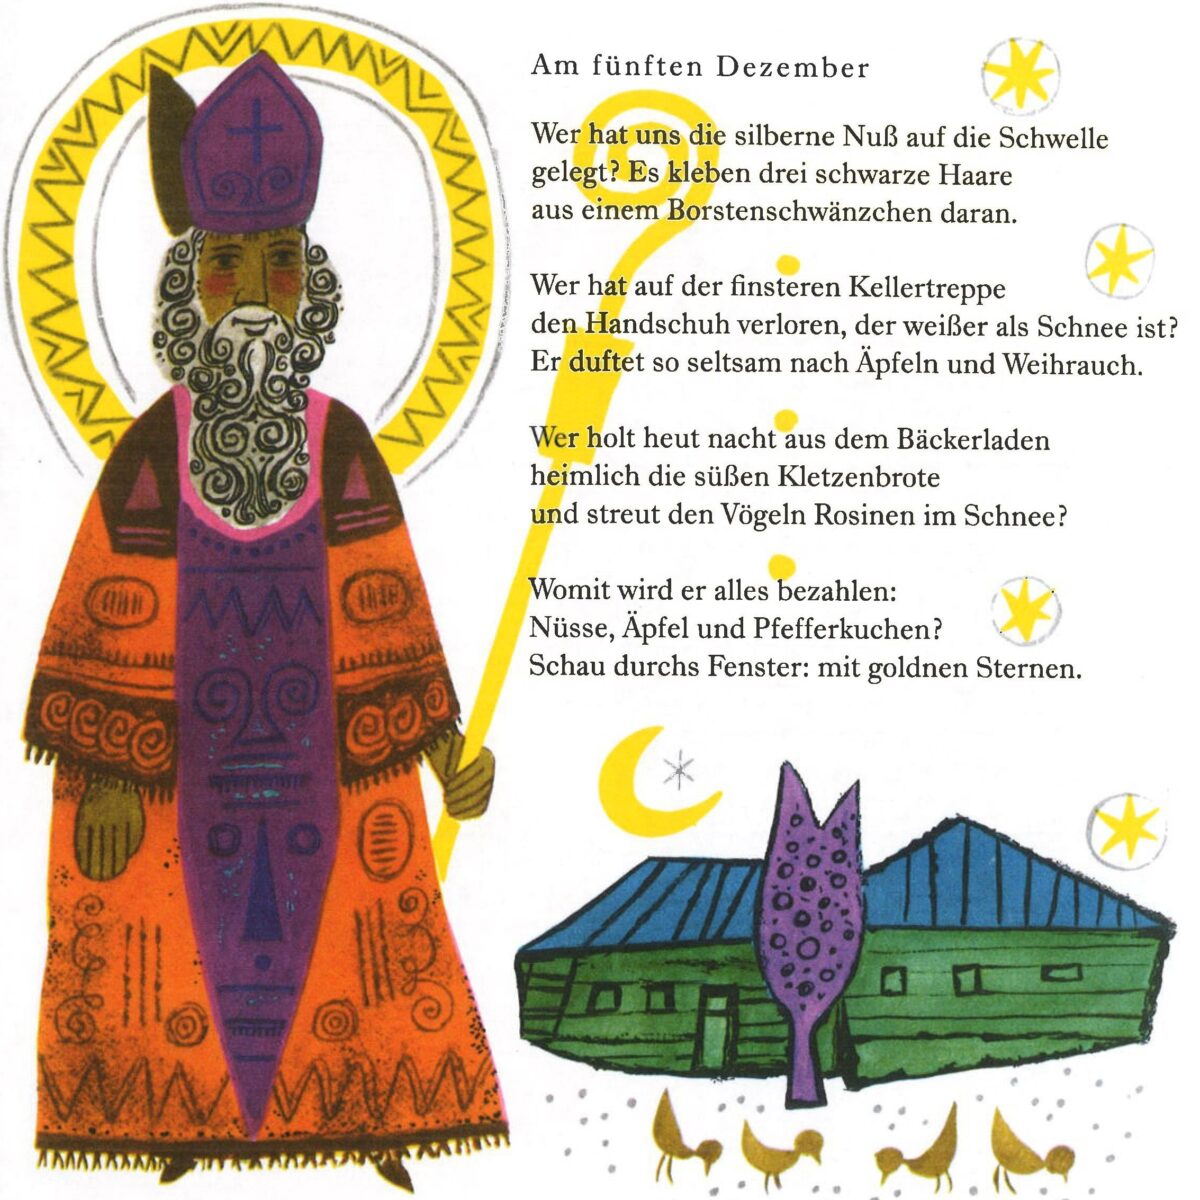 Scan einer Seite aus Buch "Die Sternenmühle" von Christine Basta, Zeichnung eines Nikolaus, Sternen und Bauernhof; Gedicht "Am fünften Dezember"